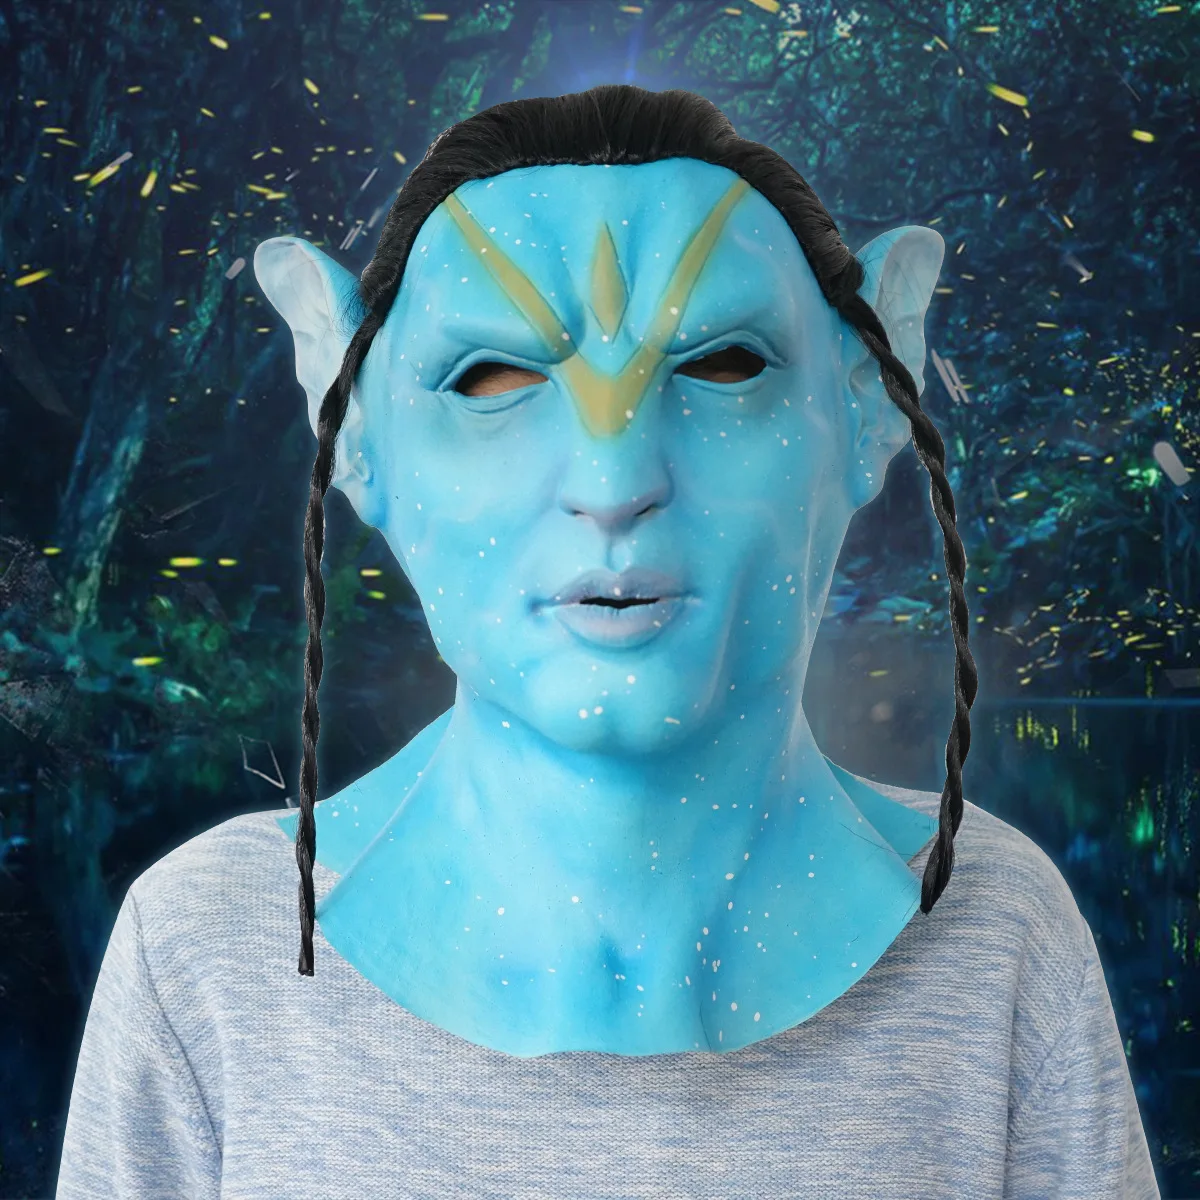 Nuovo film costumi Cosplay Avatar per adulti tuta di alta qualità con  accessori e maschera in lattice per costumi Cosplay di uomini e donne -  AliExpress